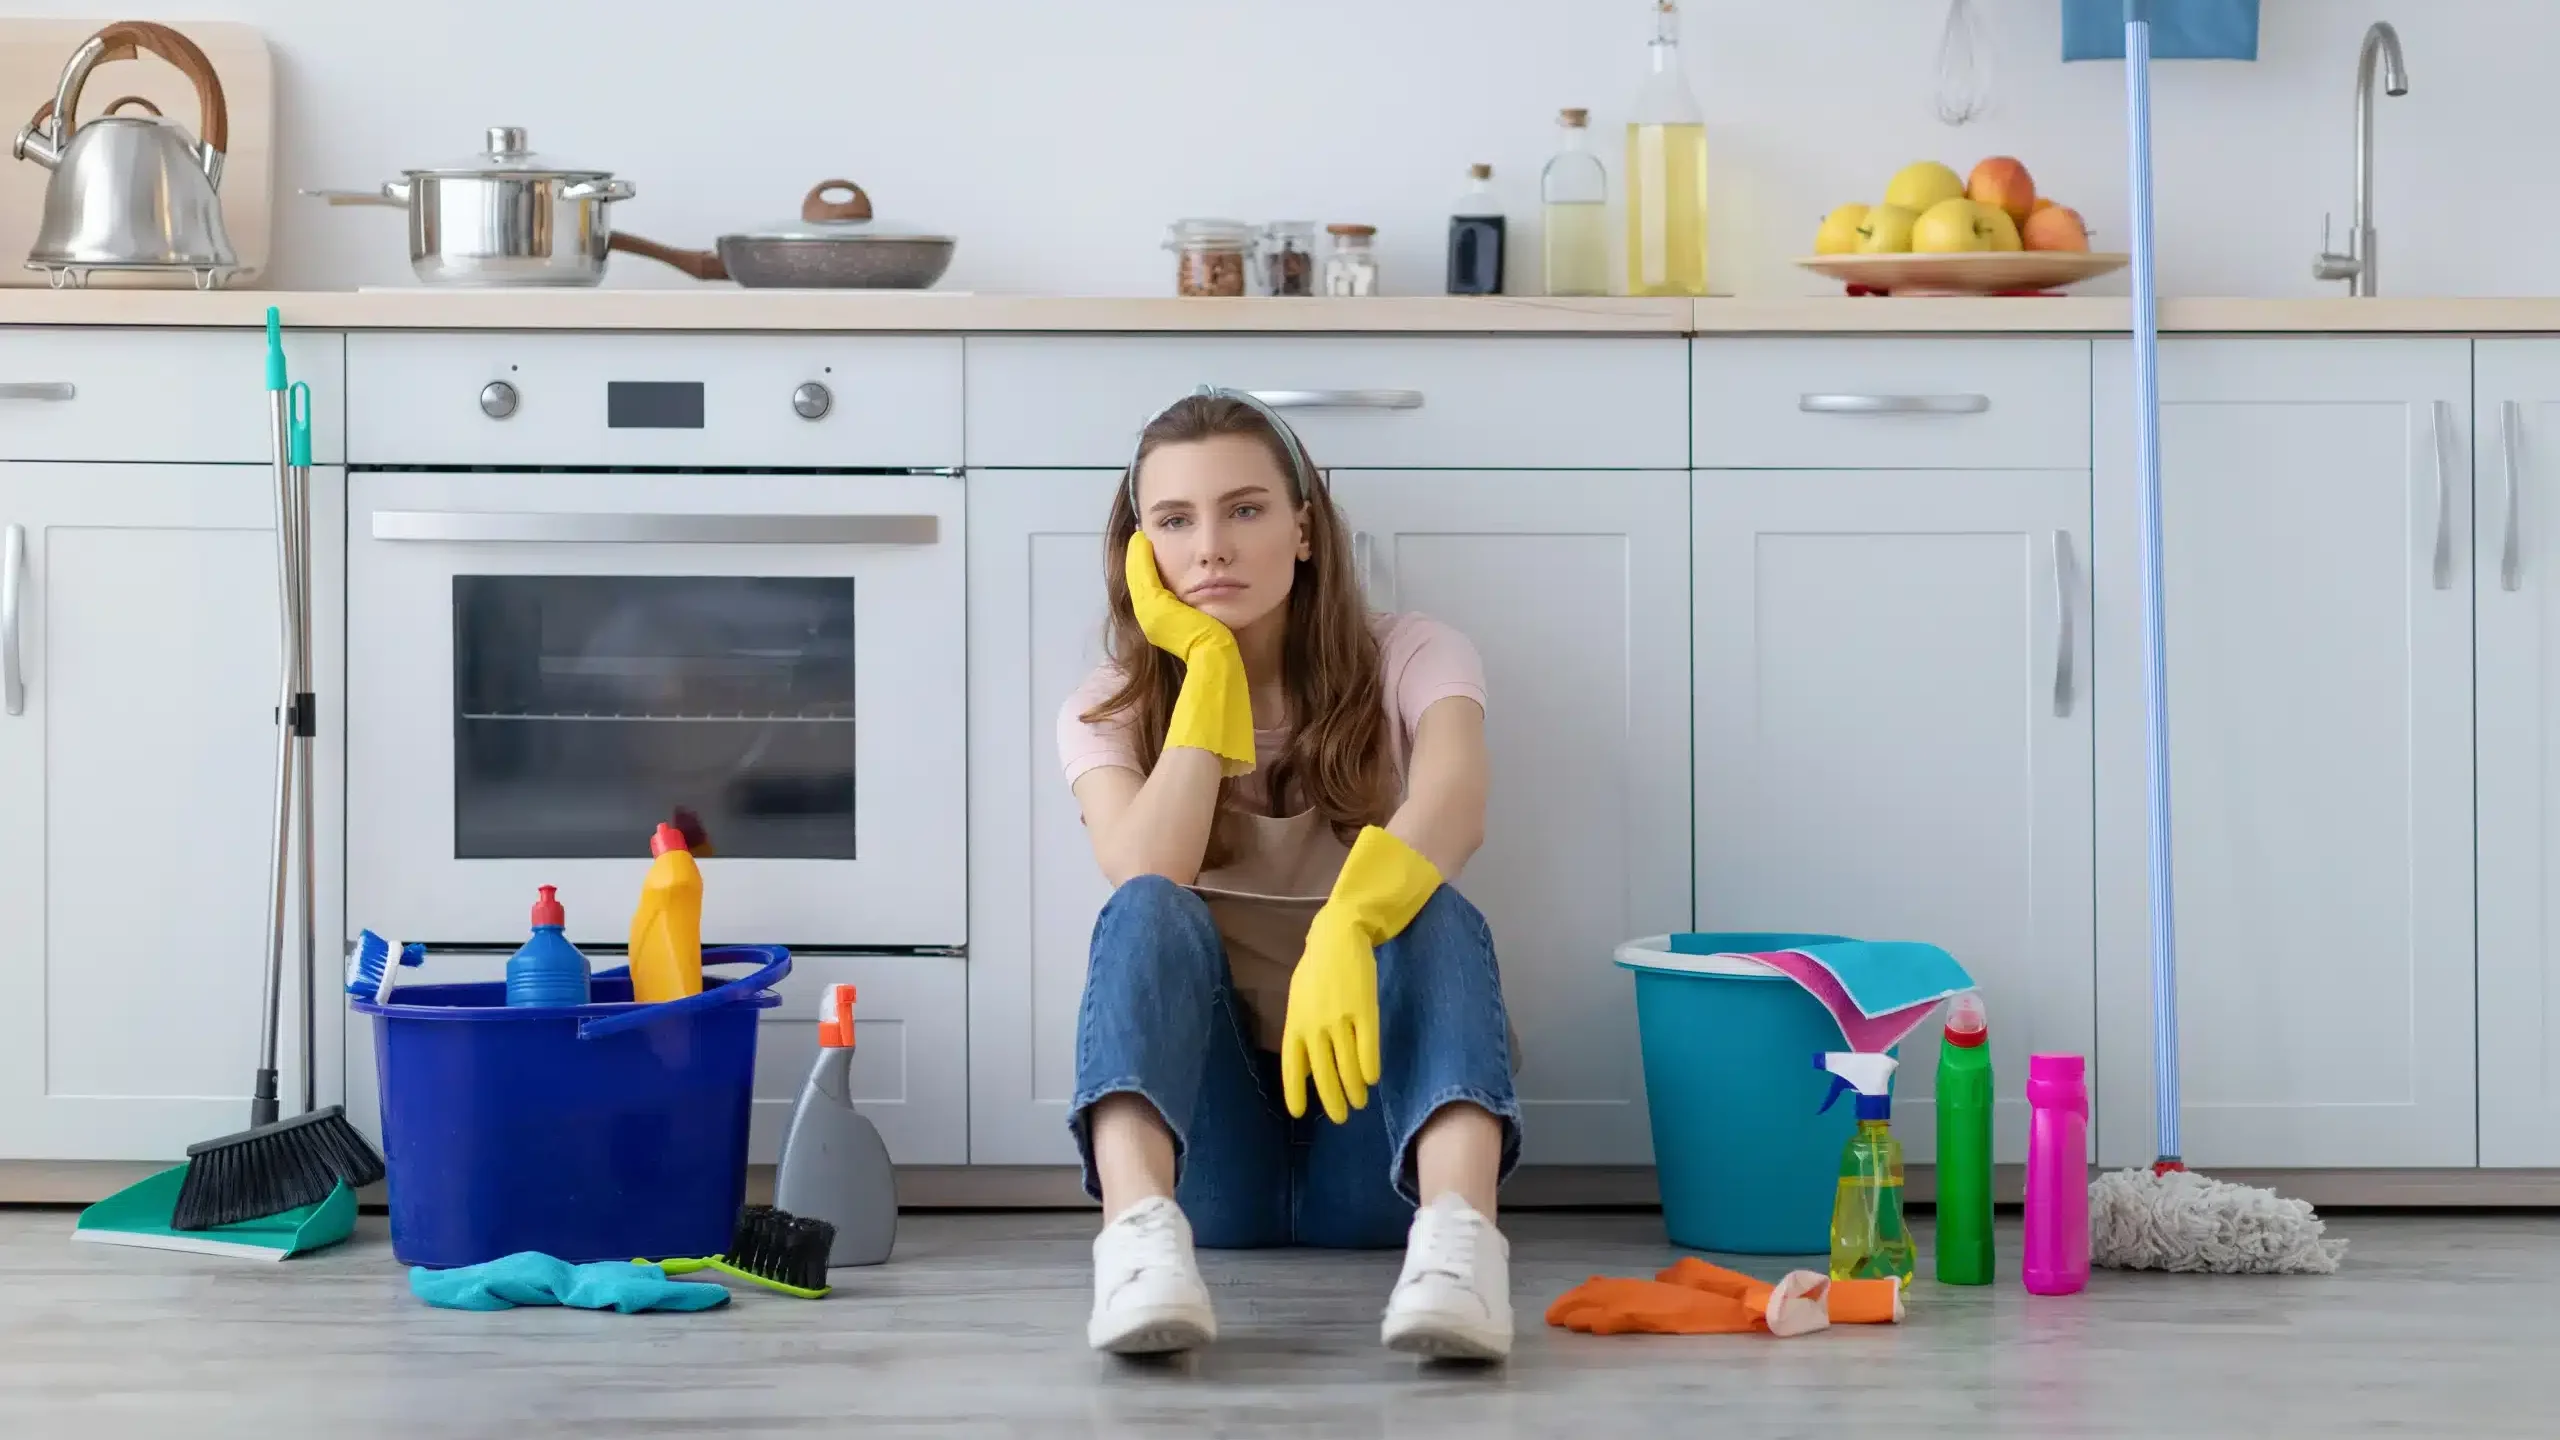 Zniechęcona smugami na podłodze kobieta siedząca przy szafce kuchennej w otoczeniu detergentów i akcesoriów do sprzątania